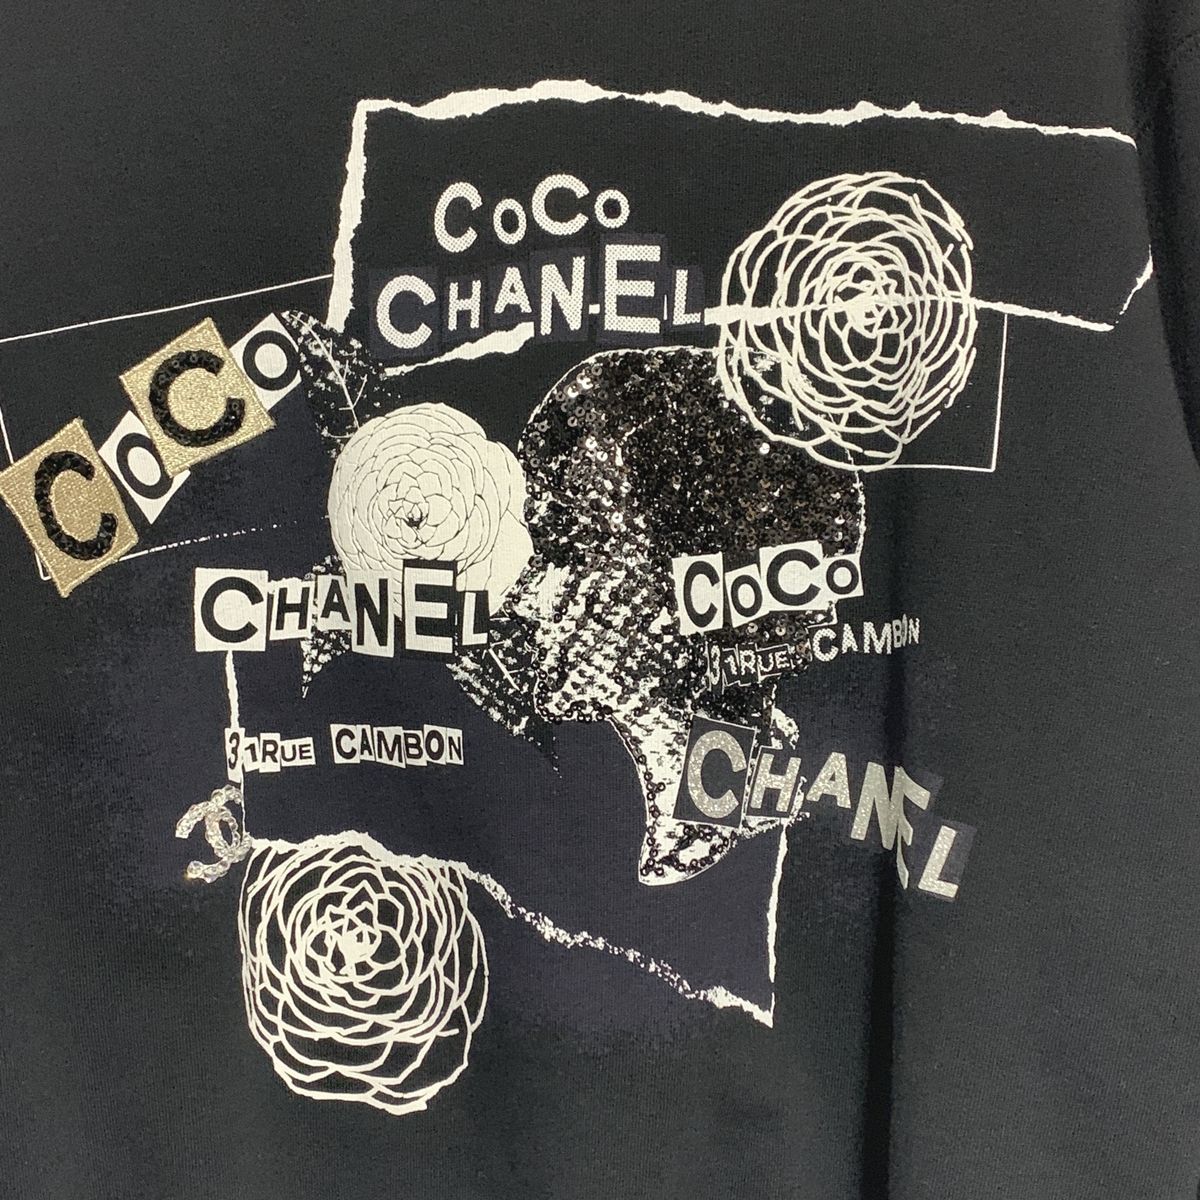 [ б/у ] CHANEL Chanel тренировочный футболка P63298K48933 здесь Mark верх Sprint 23044356 AO